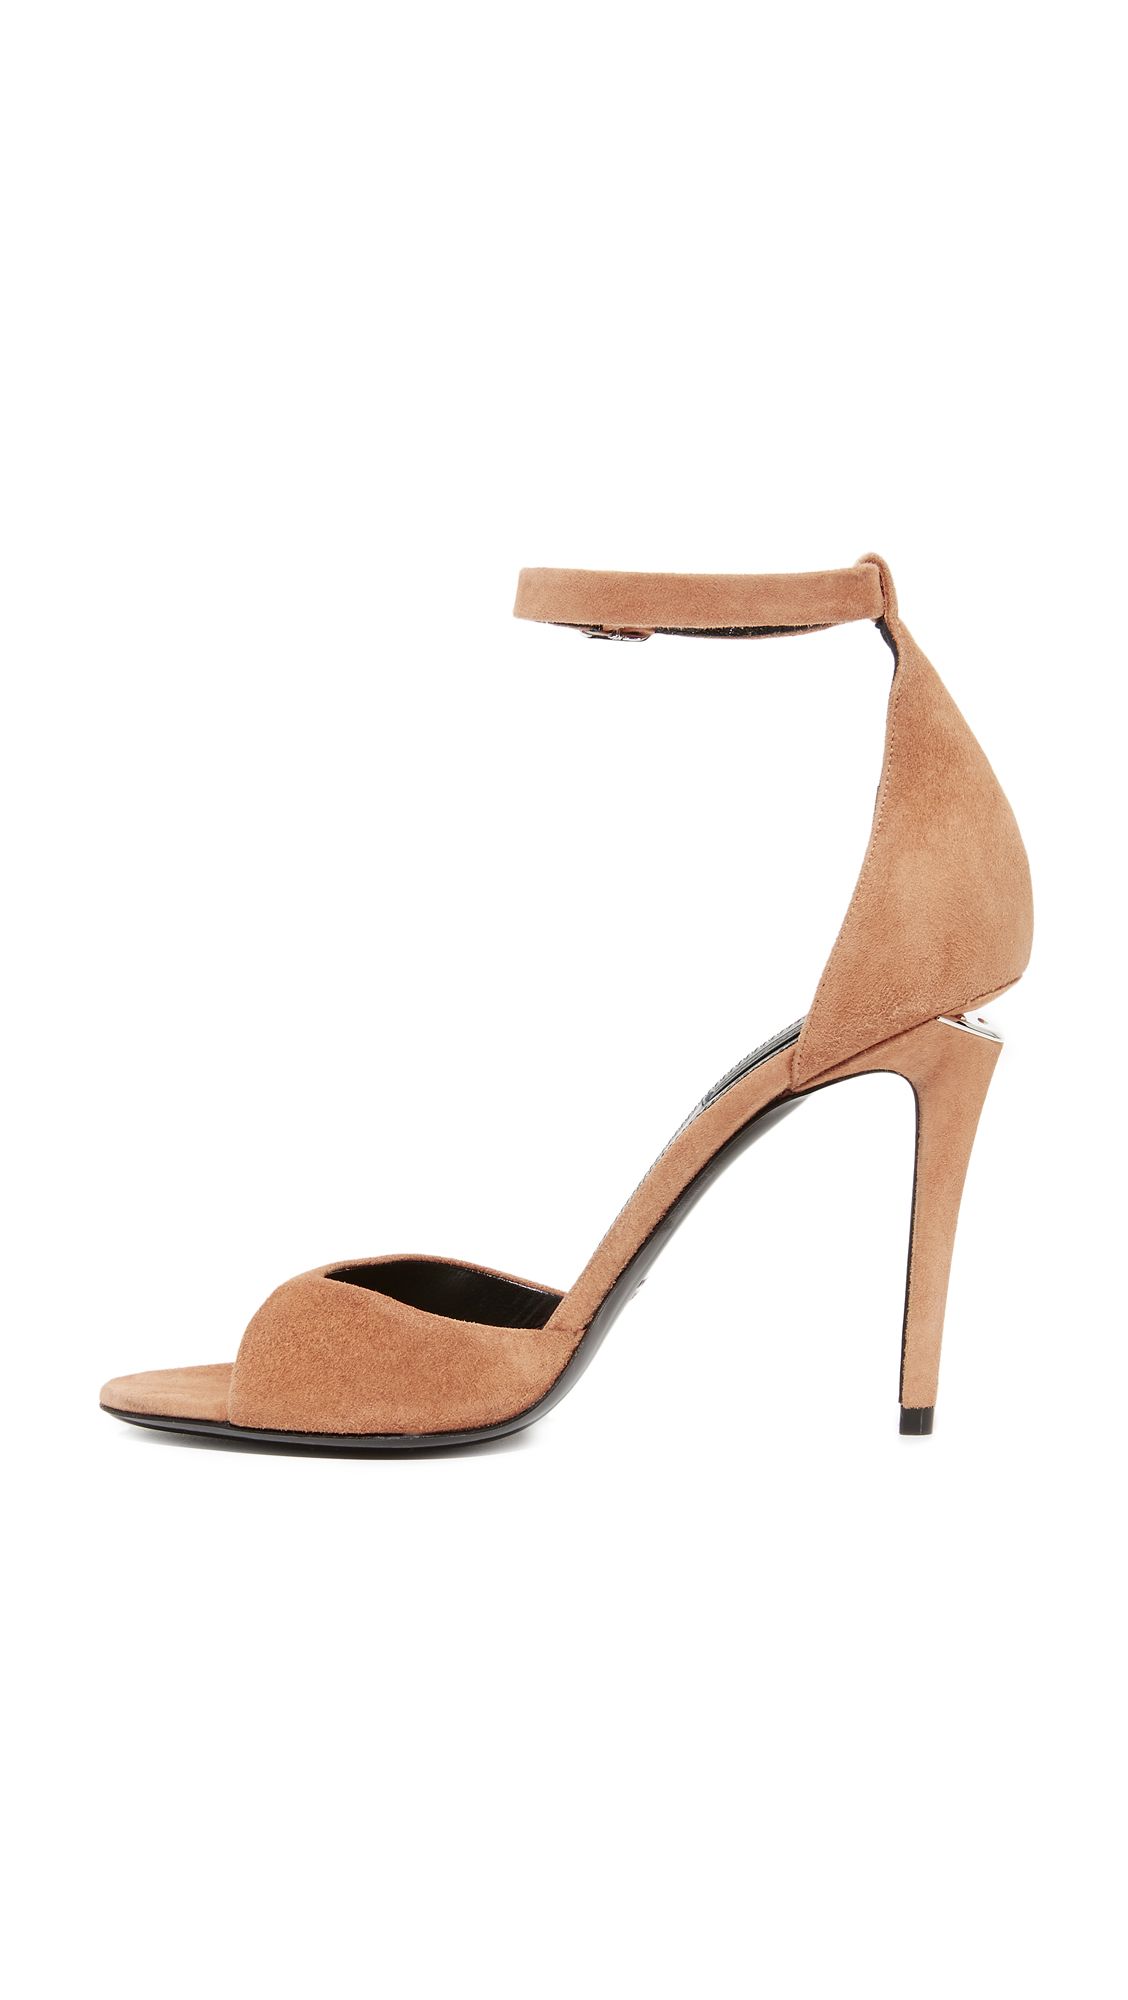 Tilda Sandals | Shopbop